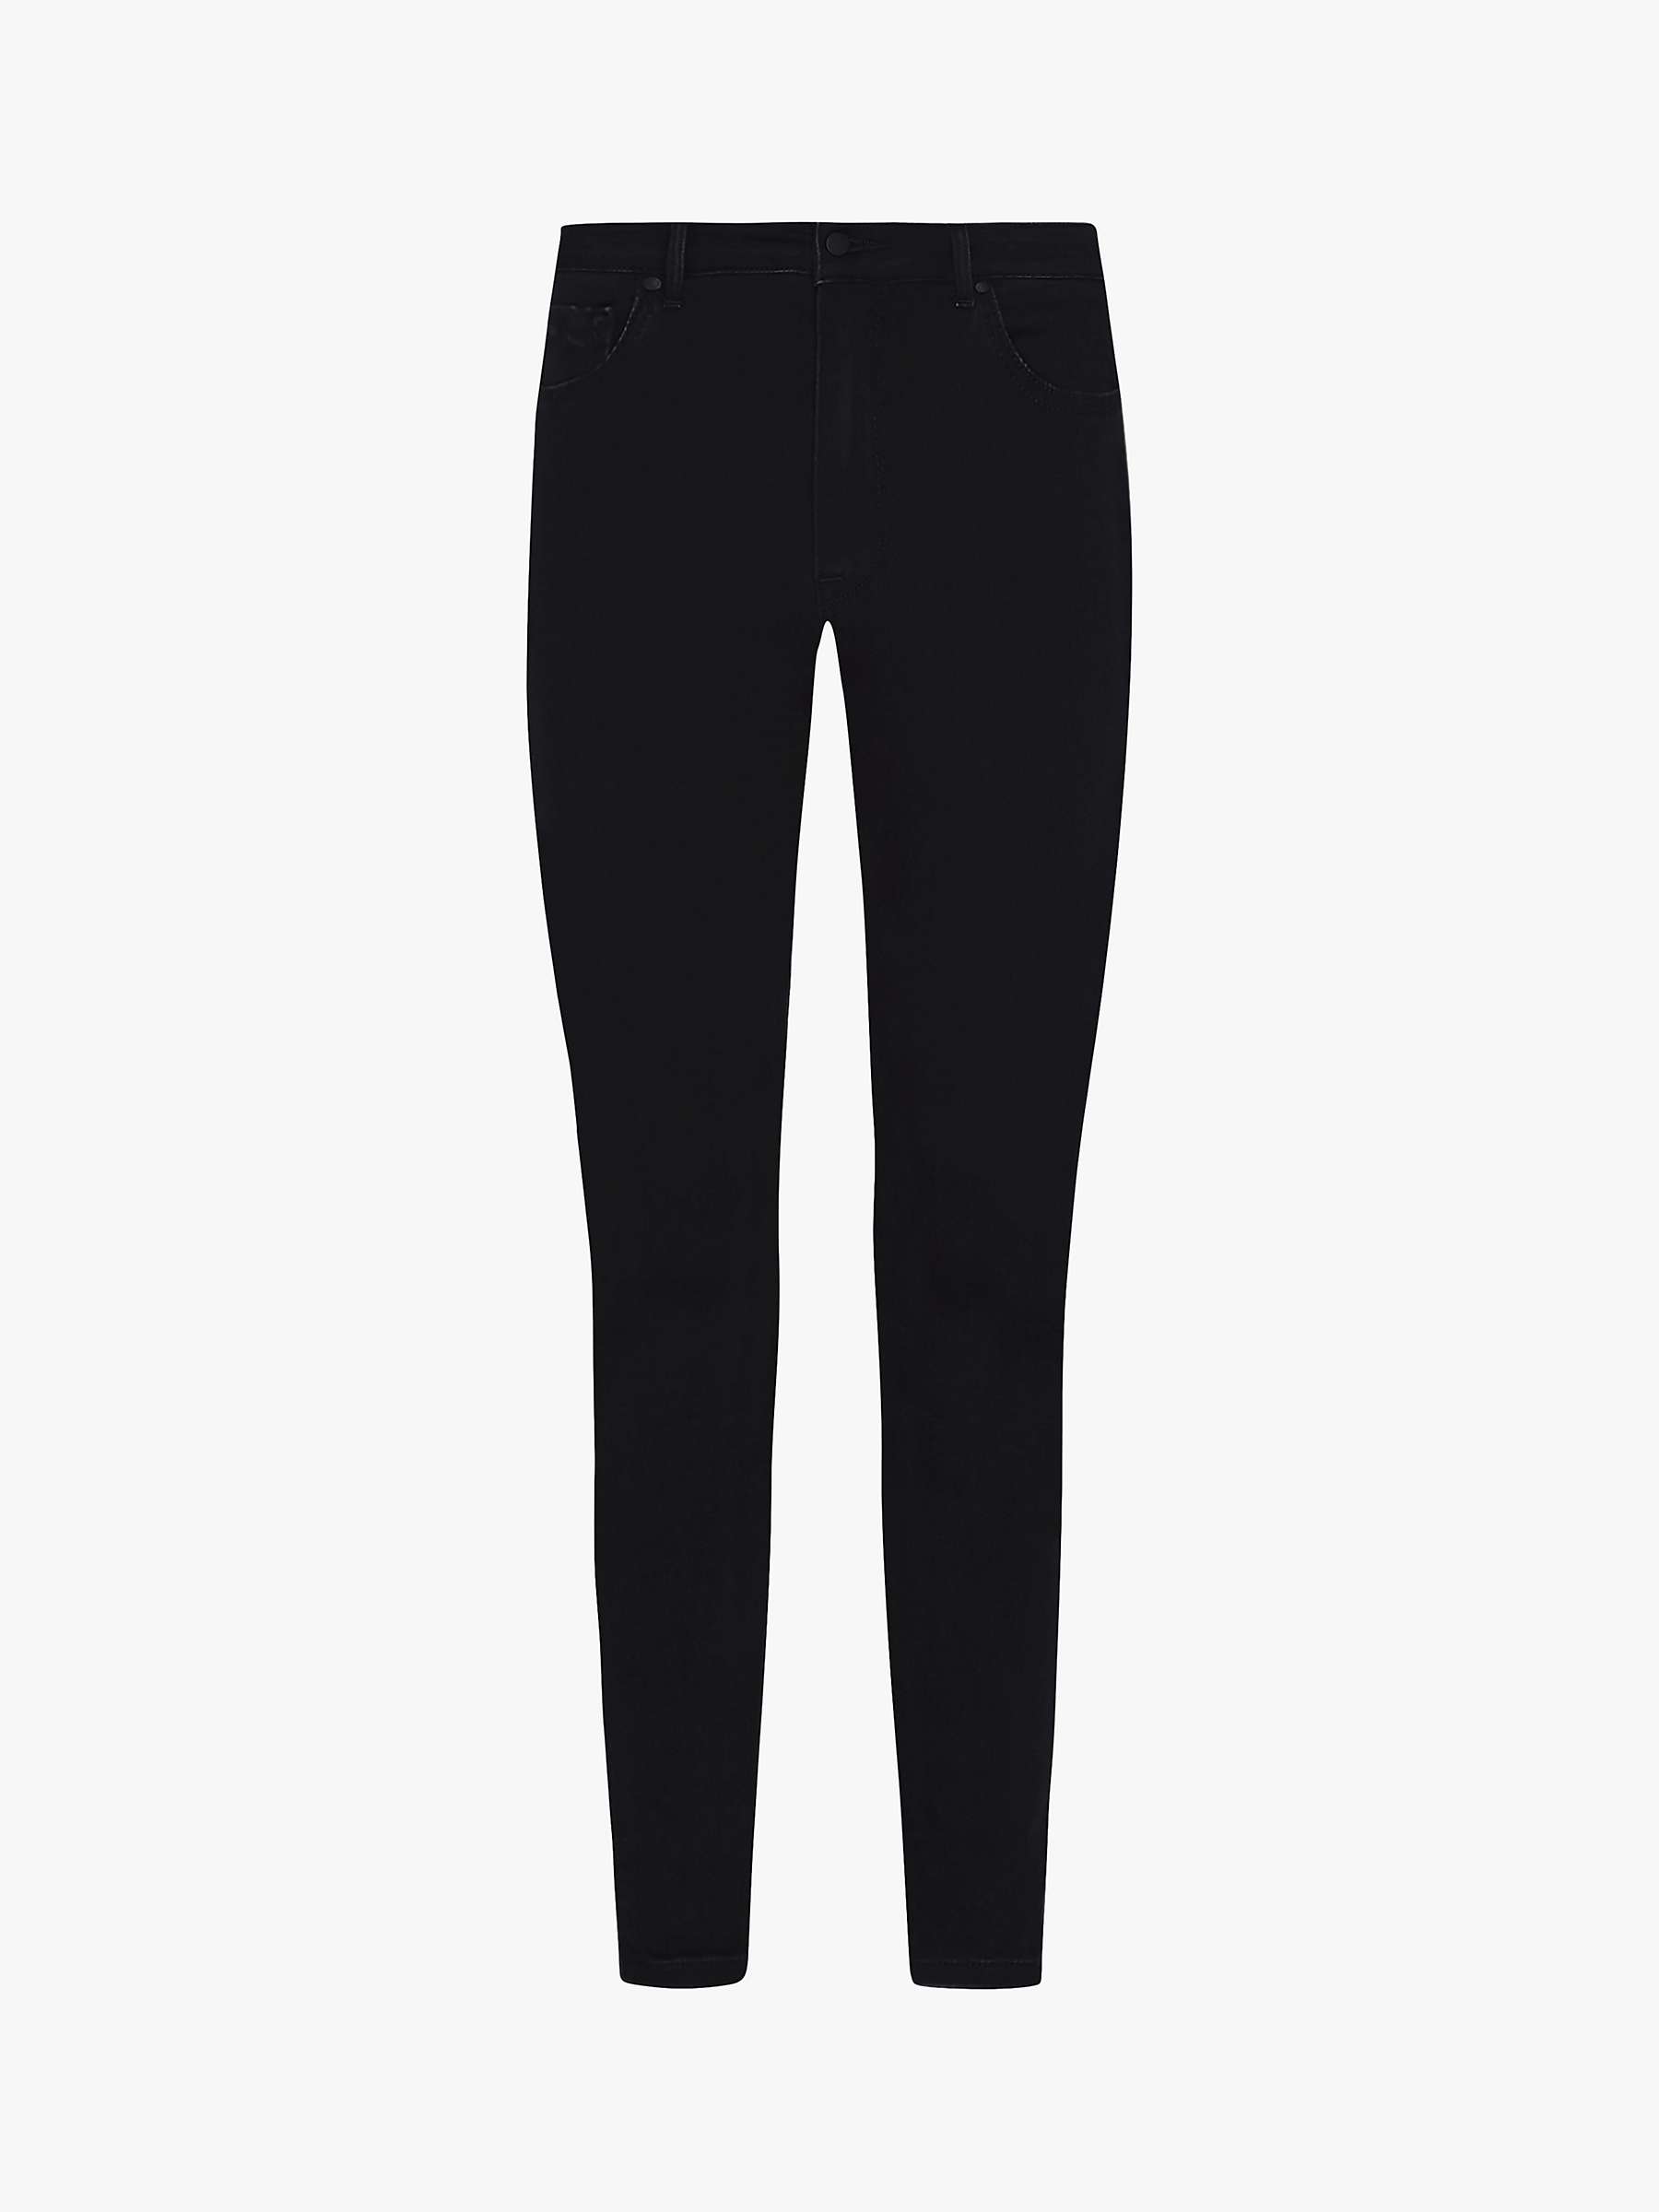 Buy Tommy Hilfiger Harlem Skinny Jeans Online at johnlewis.com